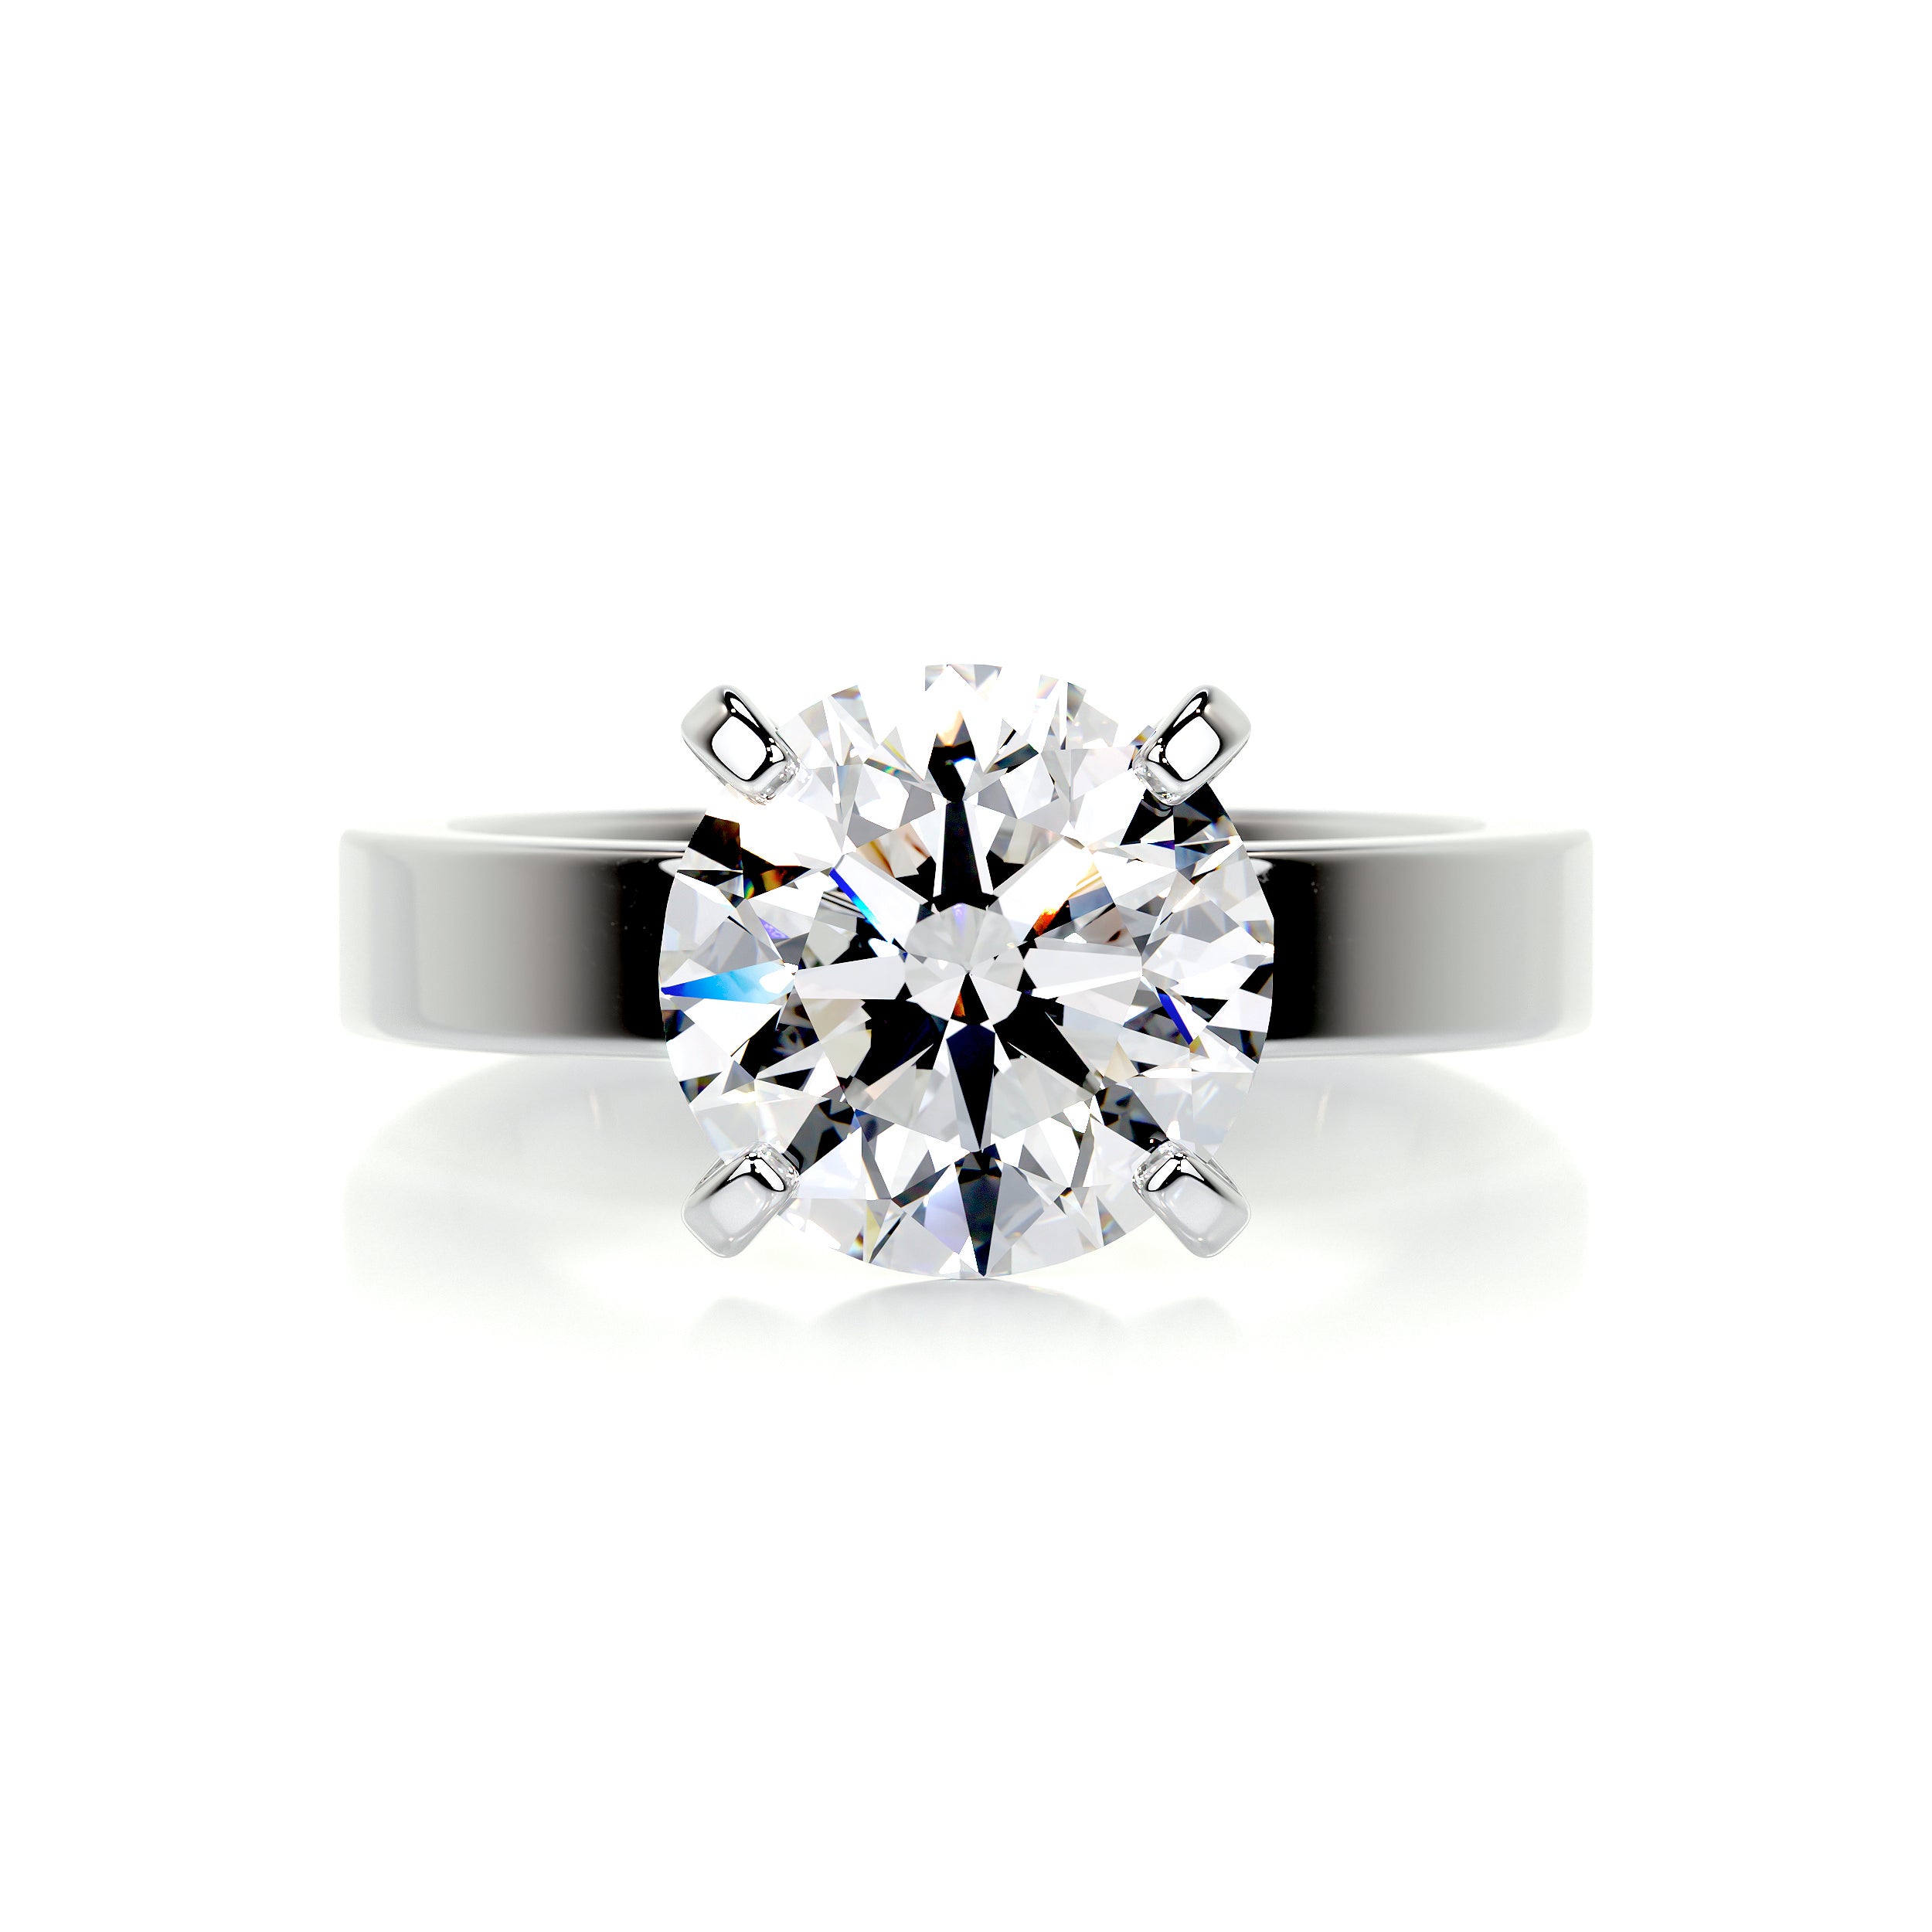 Kaia Diamond Engagement Ring   (2 Carat) -14K White Gold